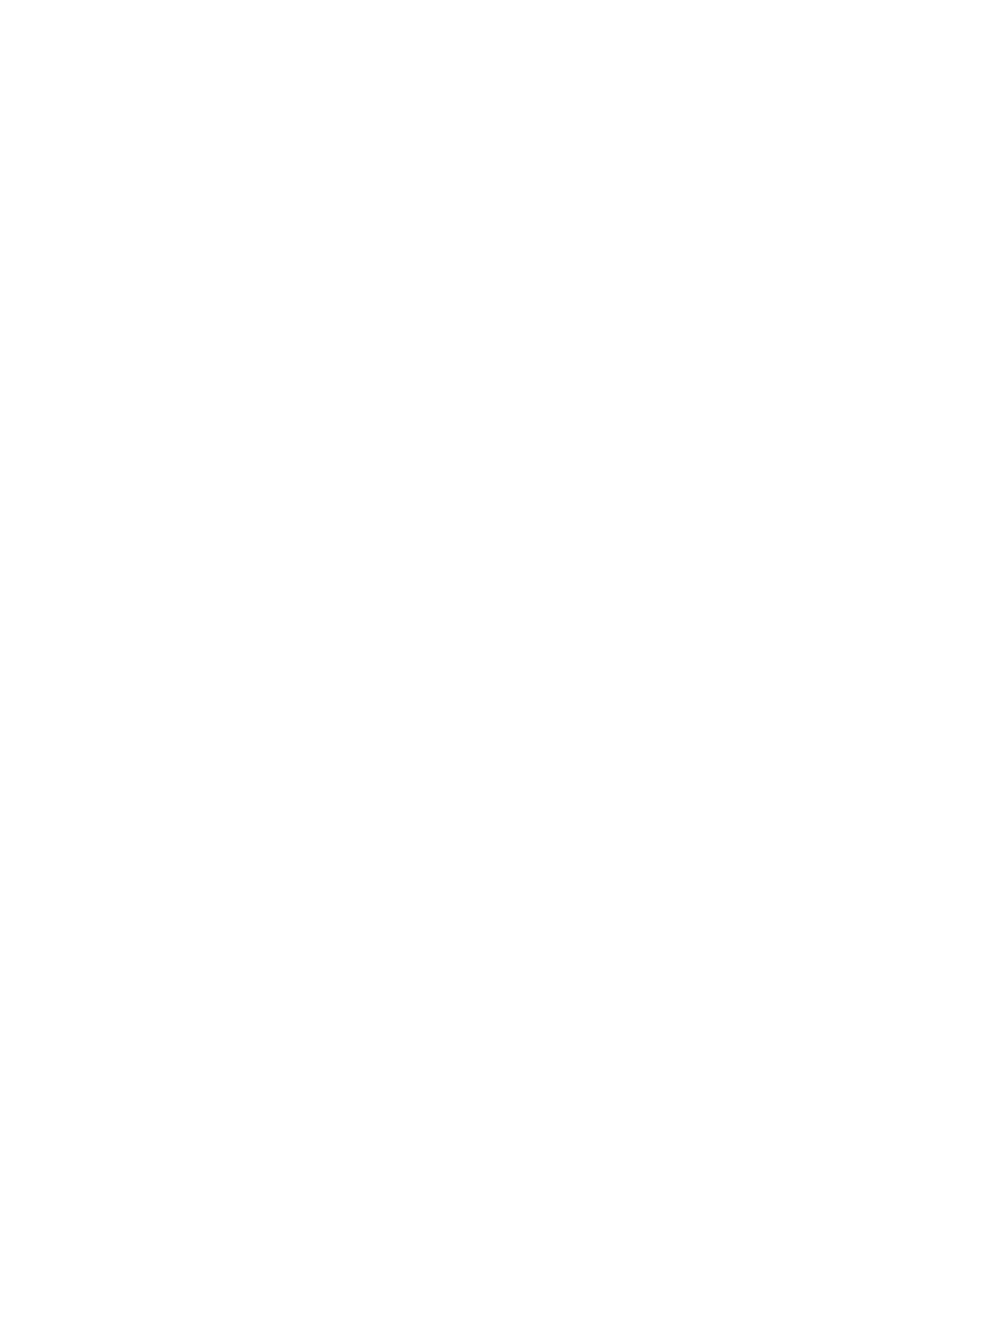 Pershing Rifles Crest